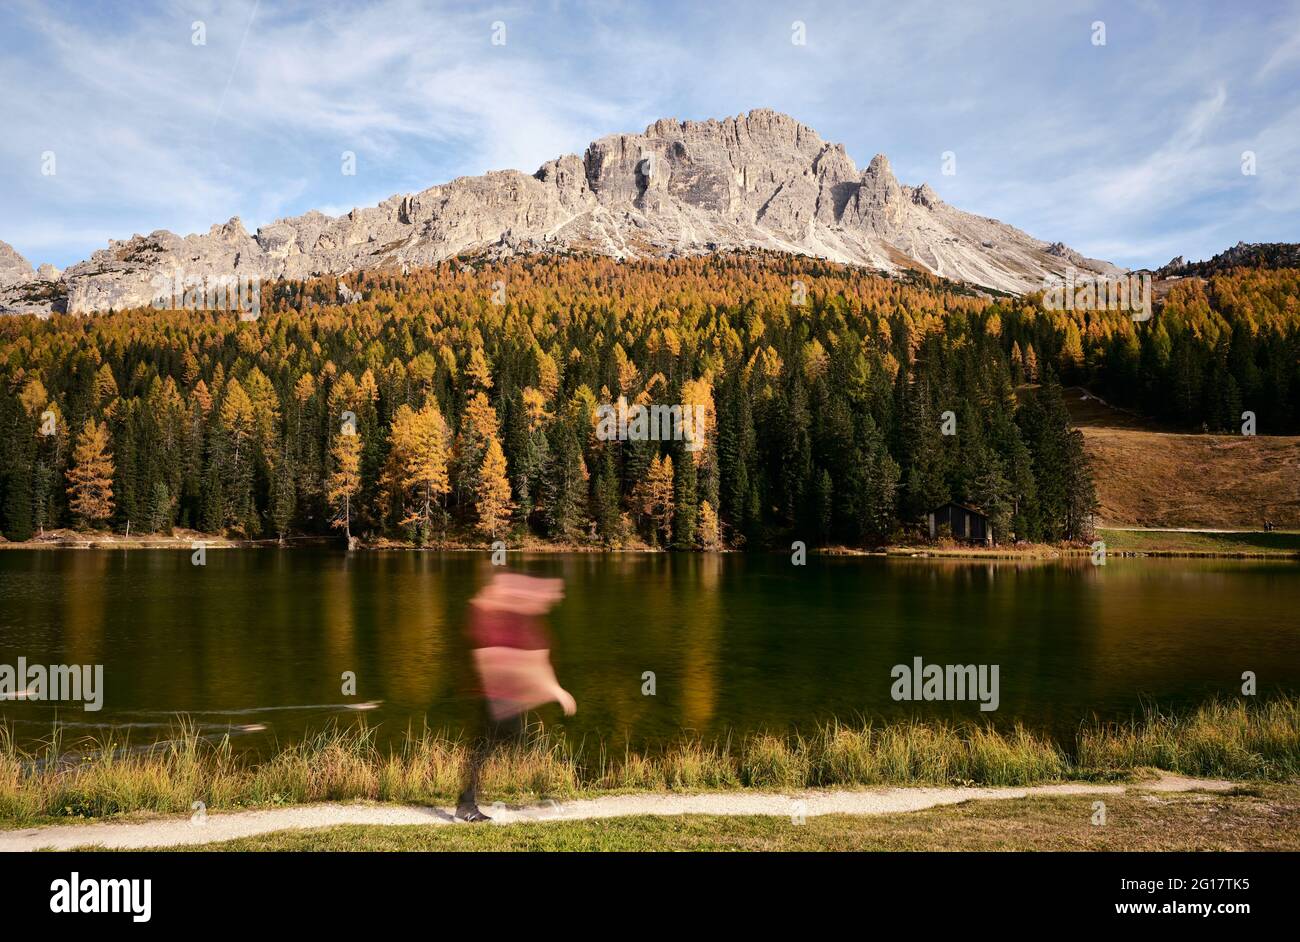 Lac et sommets des montagnes de l'Italie, dolomites Misurina, Italie, Europe, 2017 Banque D'Images